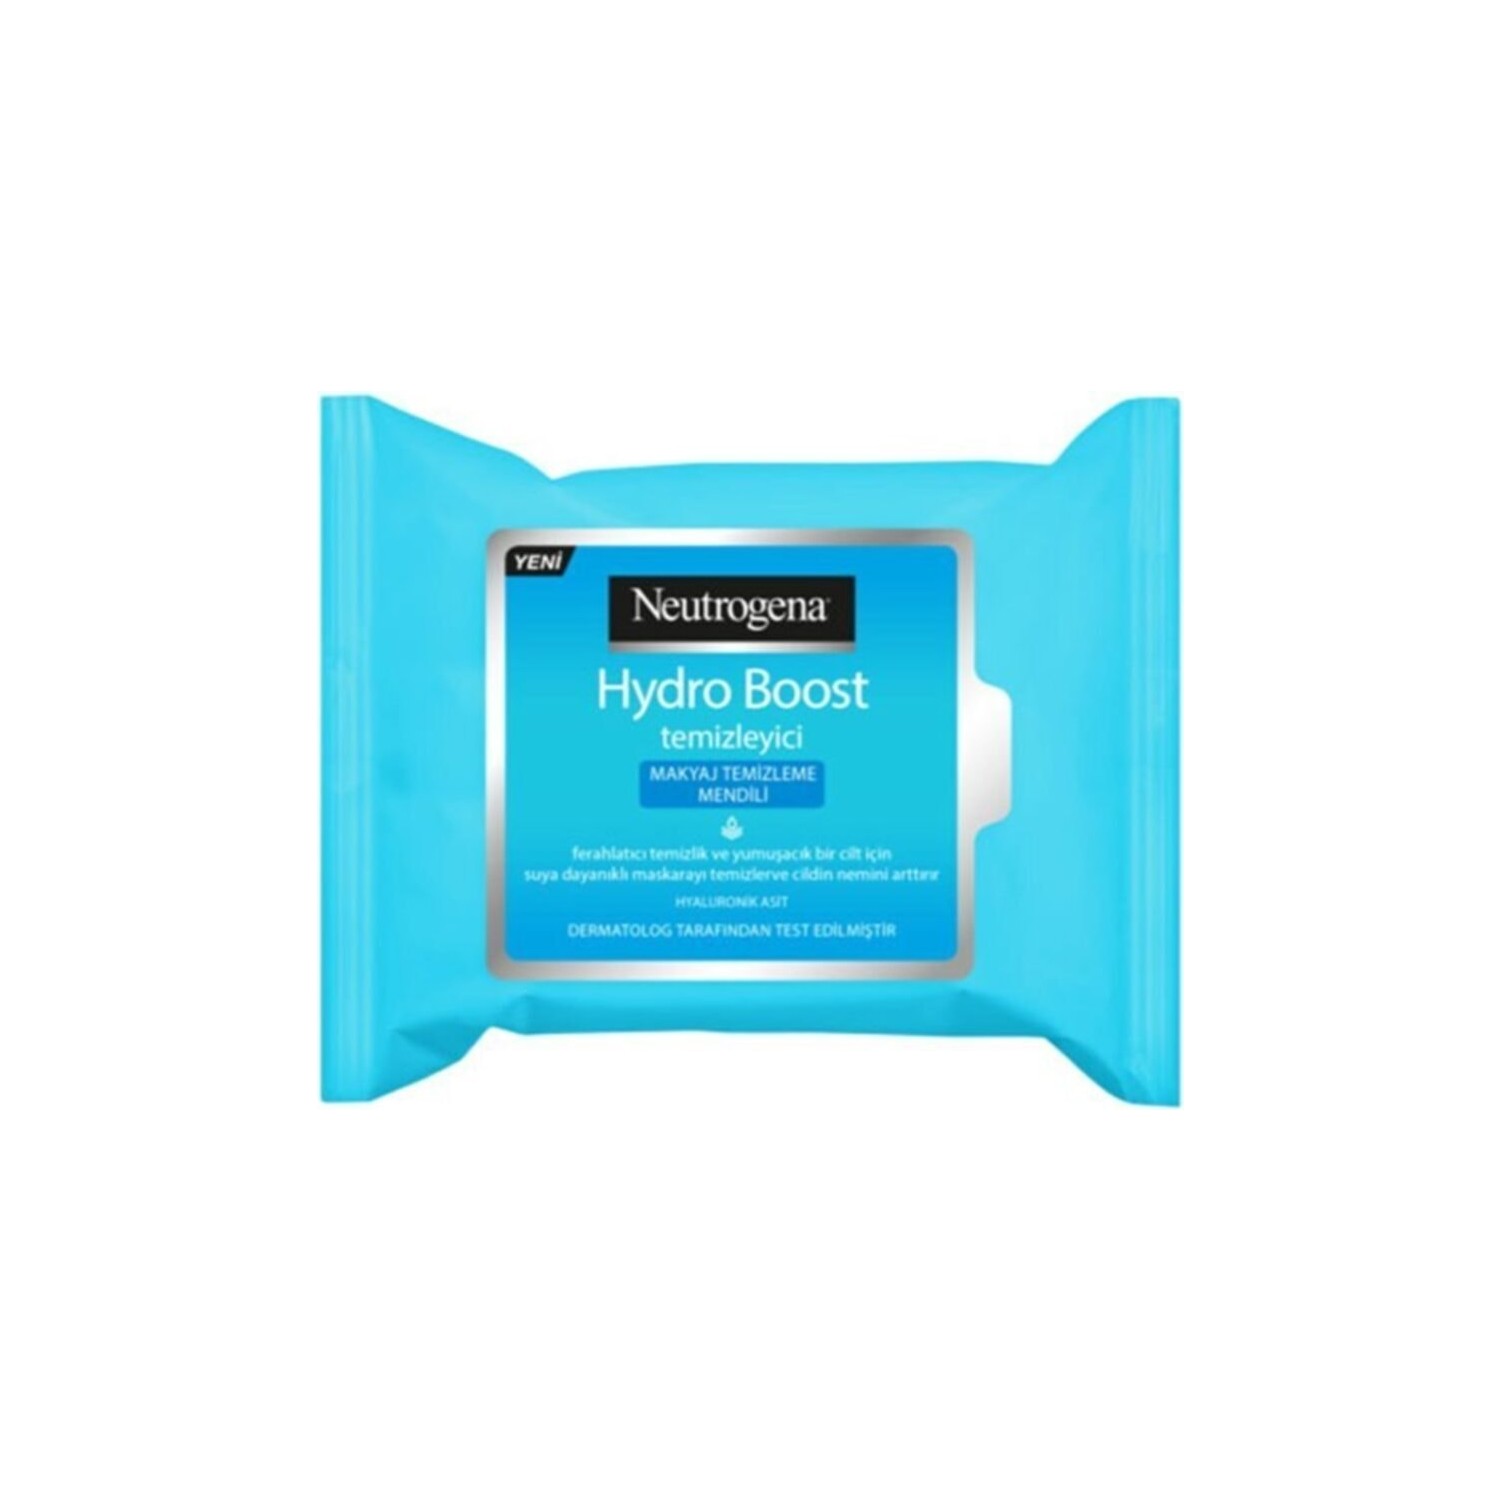 Салфетки для снятия макияжа Neutrogena Hydro Boost, 25 салфеток салфетки для снятия макияжа neutrogena deep clean 2 упаковки по 25 салфеток